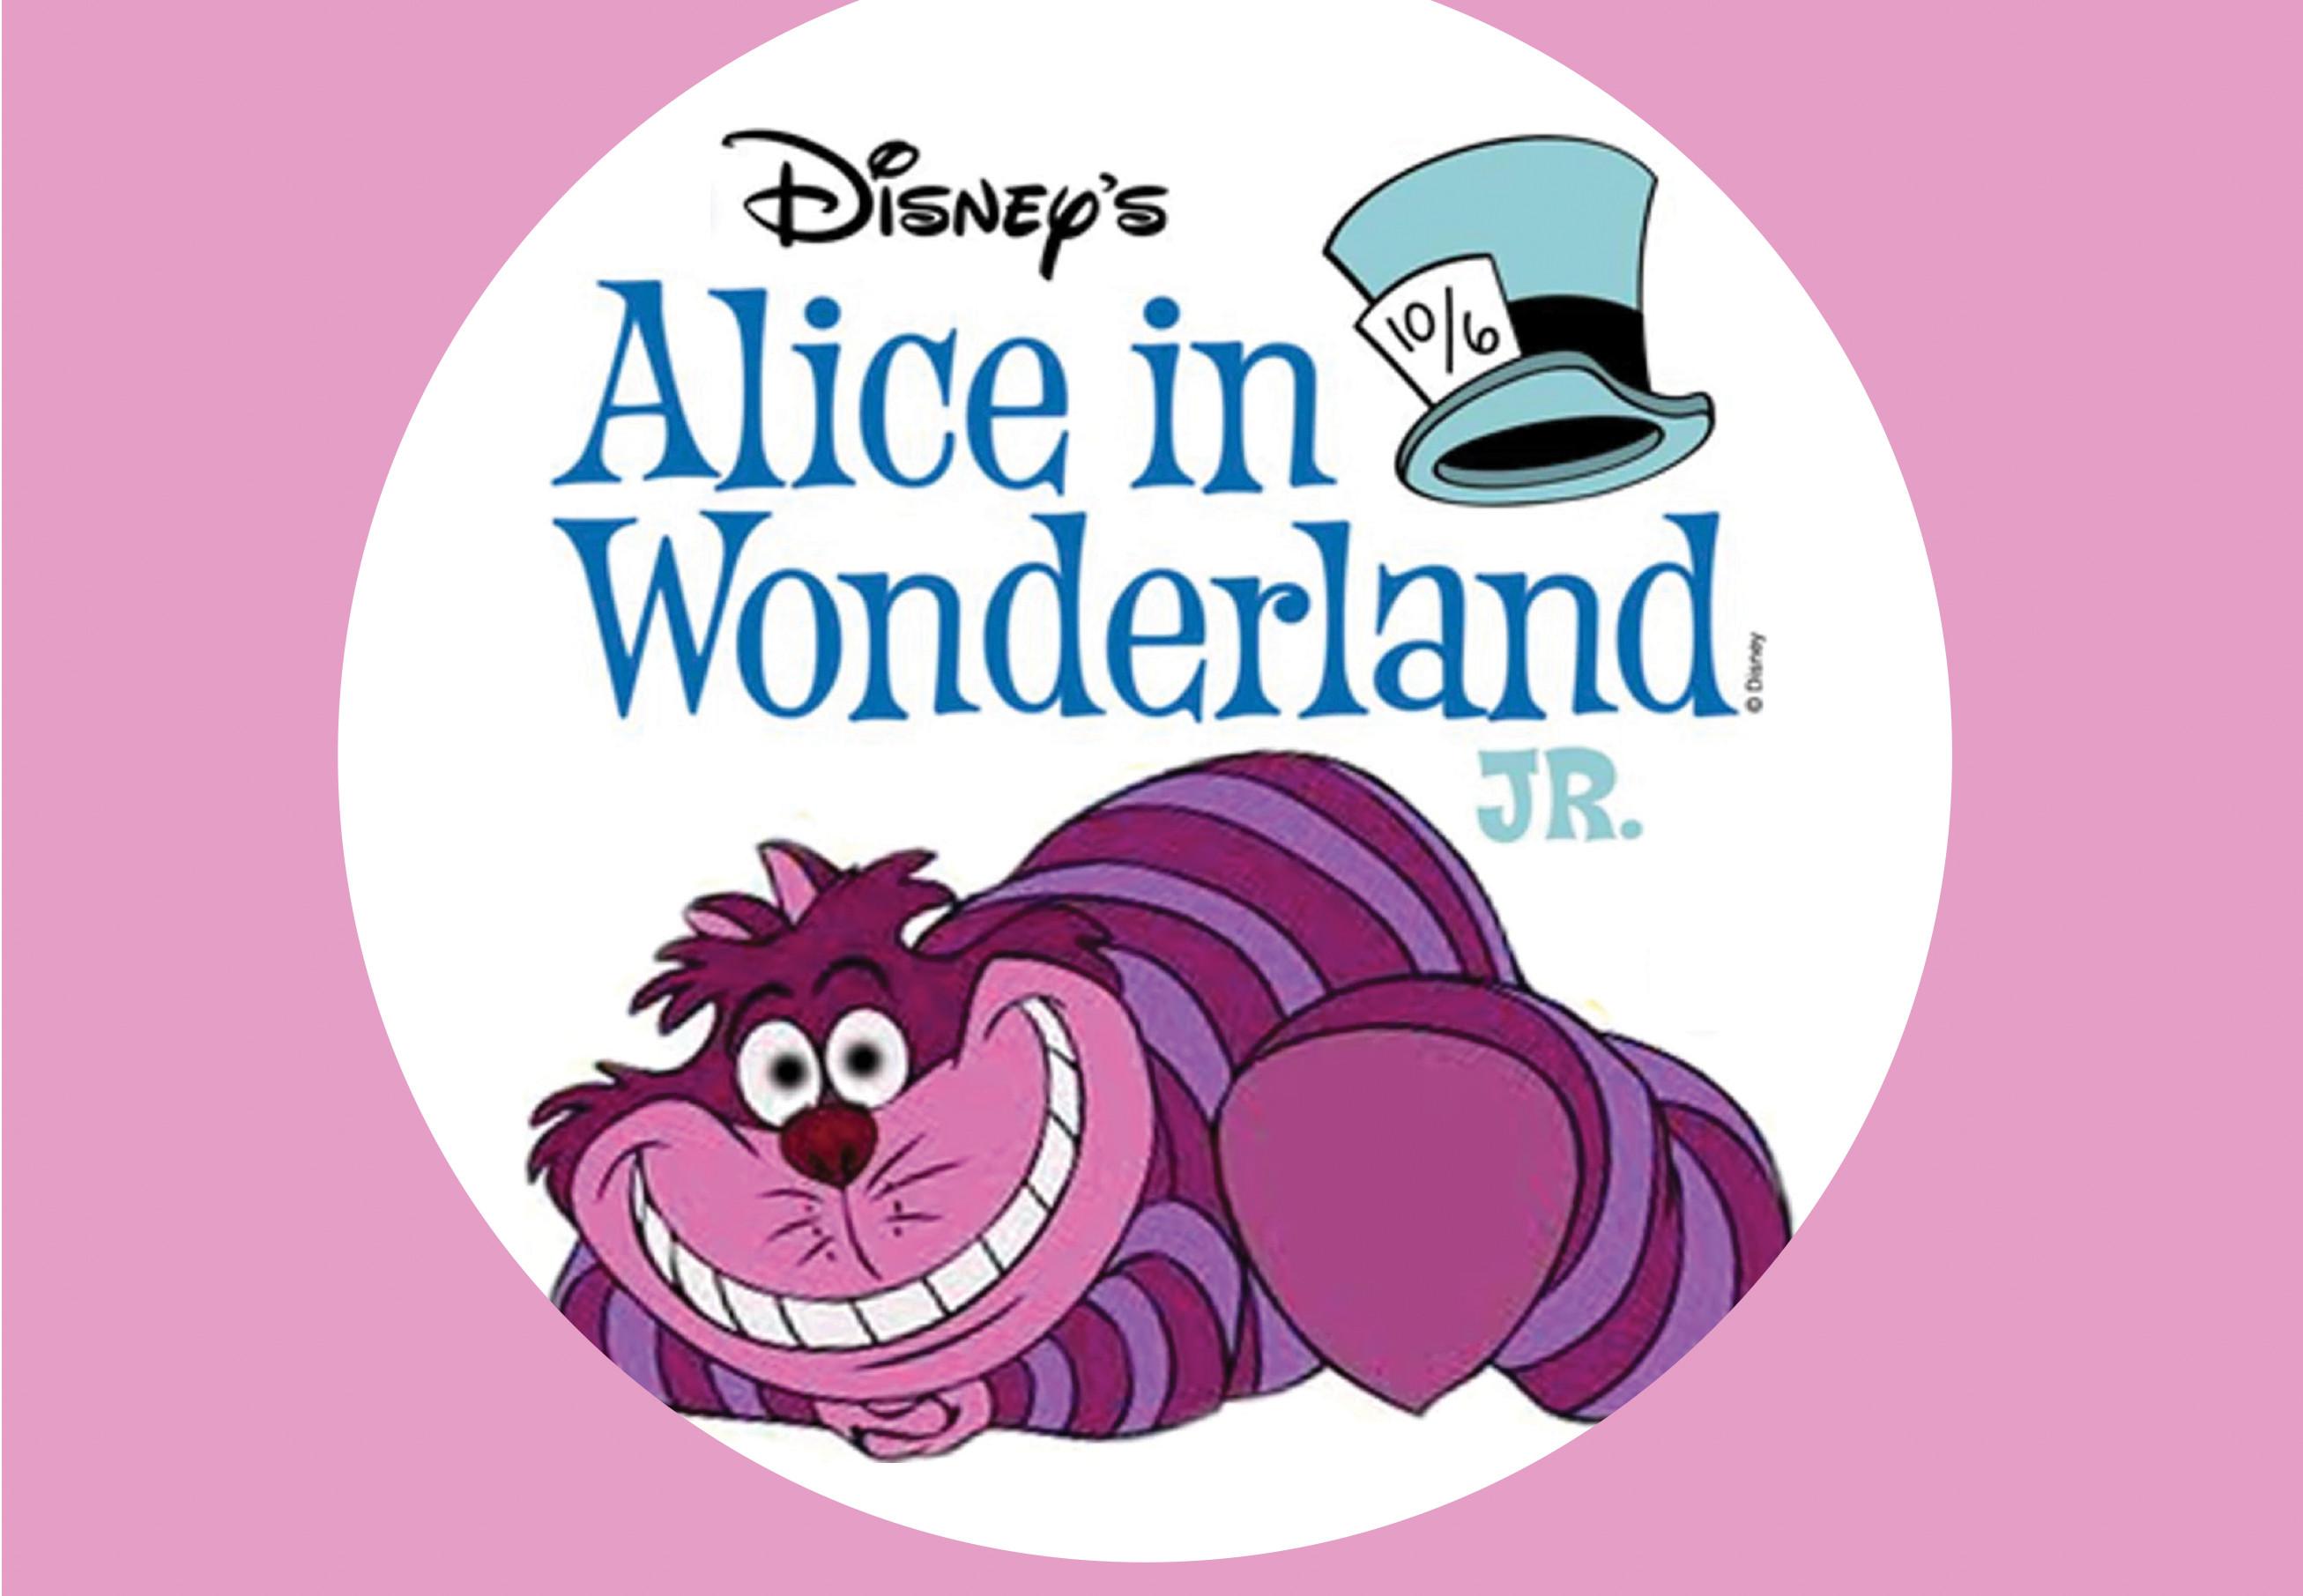 Disney's Alice in Wonderland Logo - Disney's Alice in Wonderland, Jr